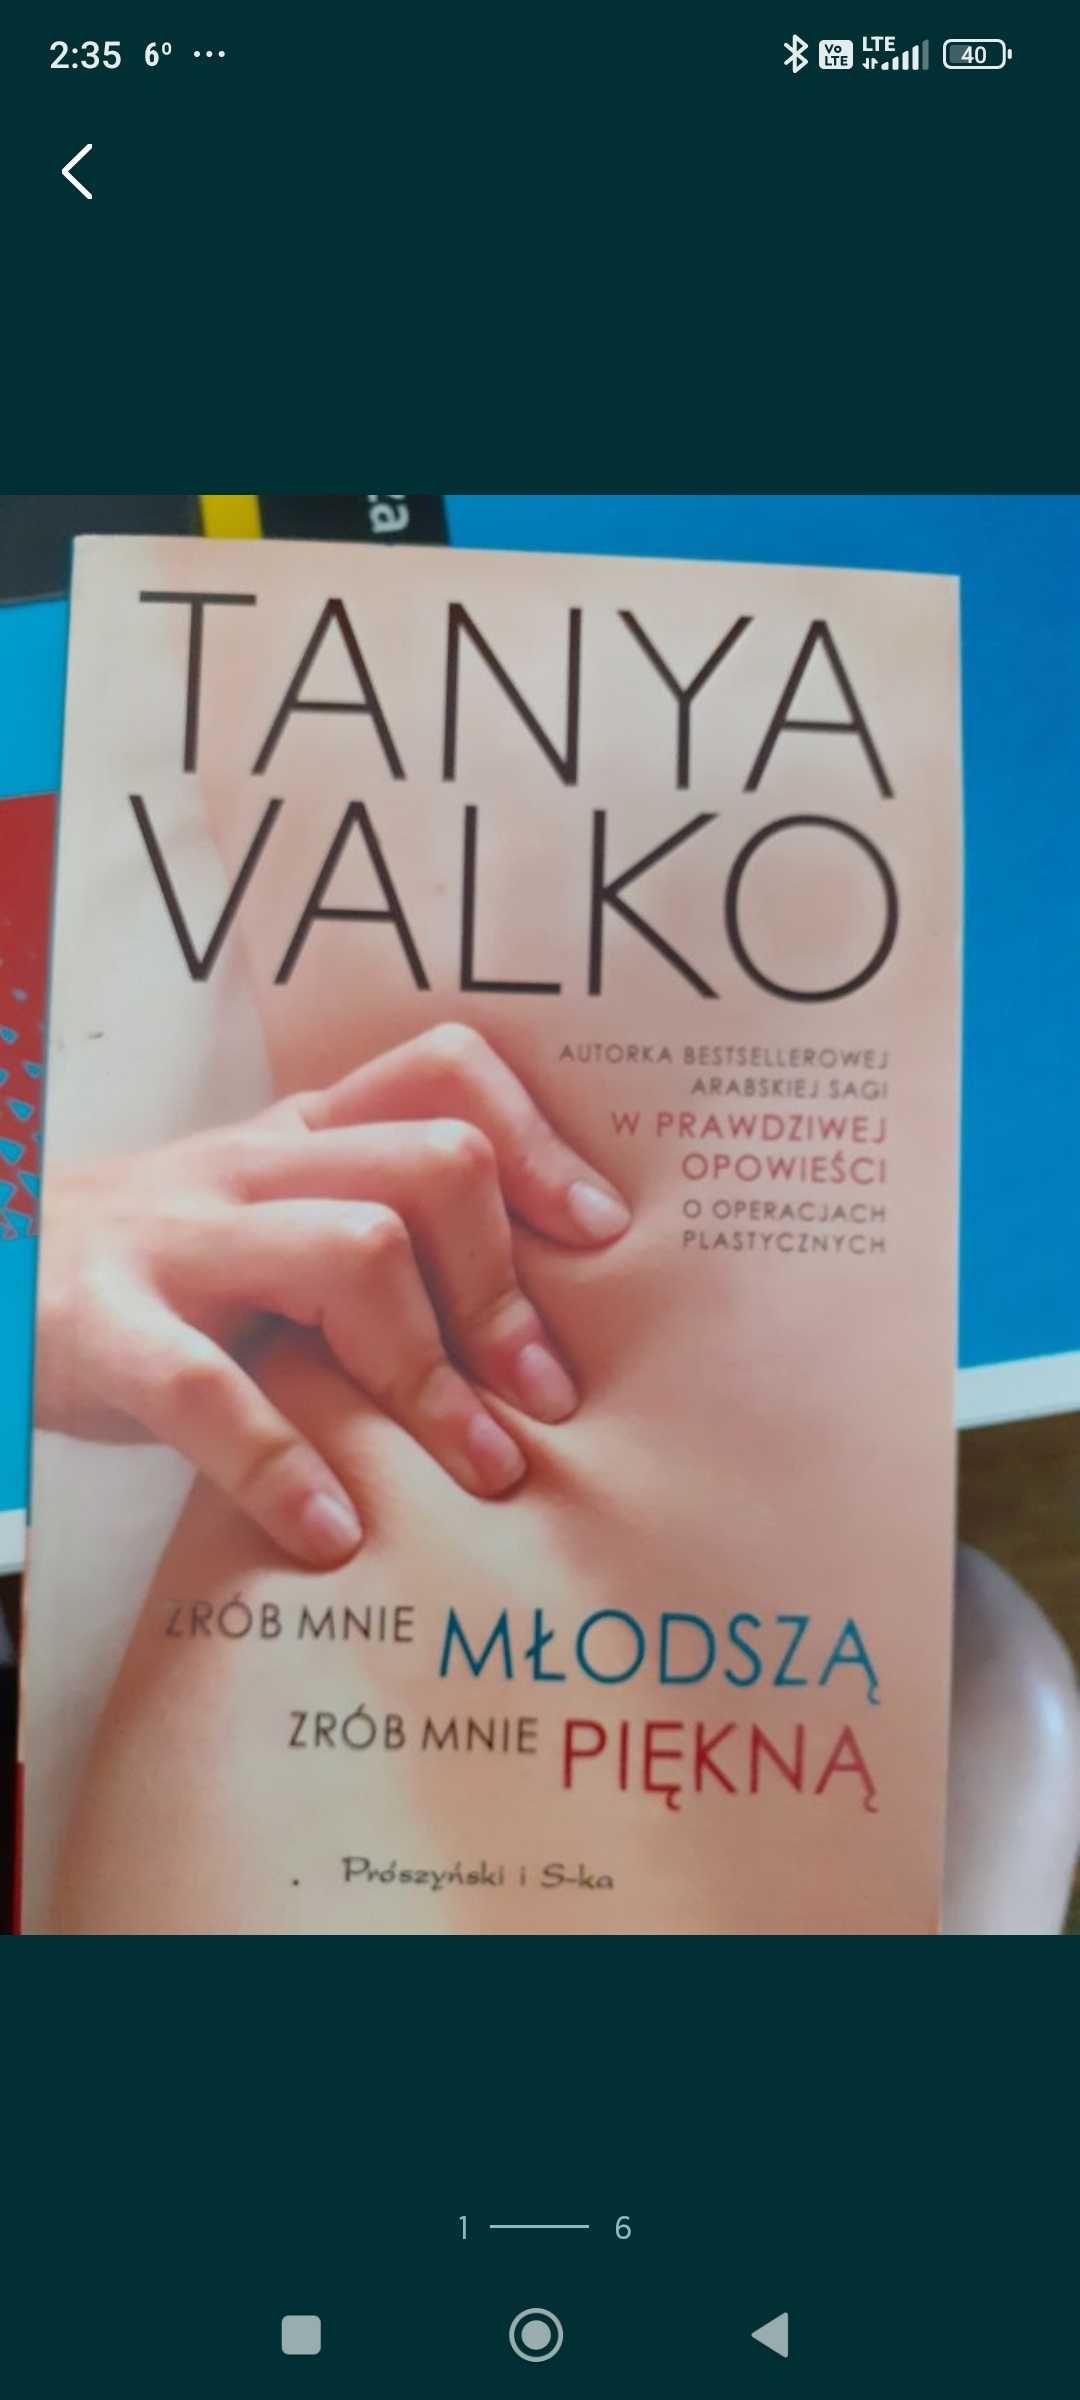 Książka Tanya Valko Zrob mnie mlodsza,zrob mnie piekna